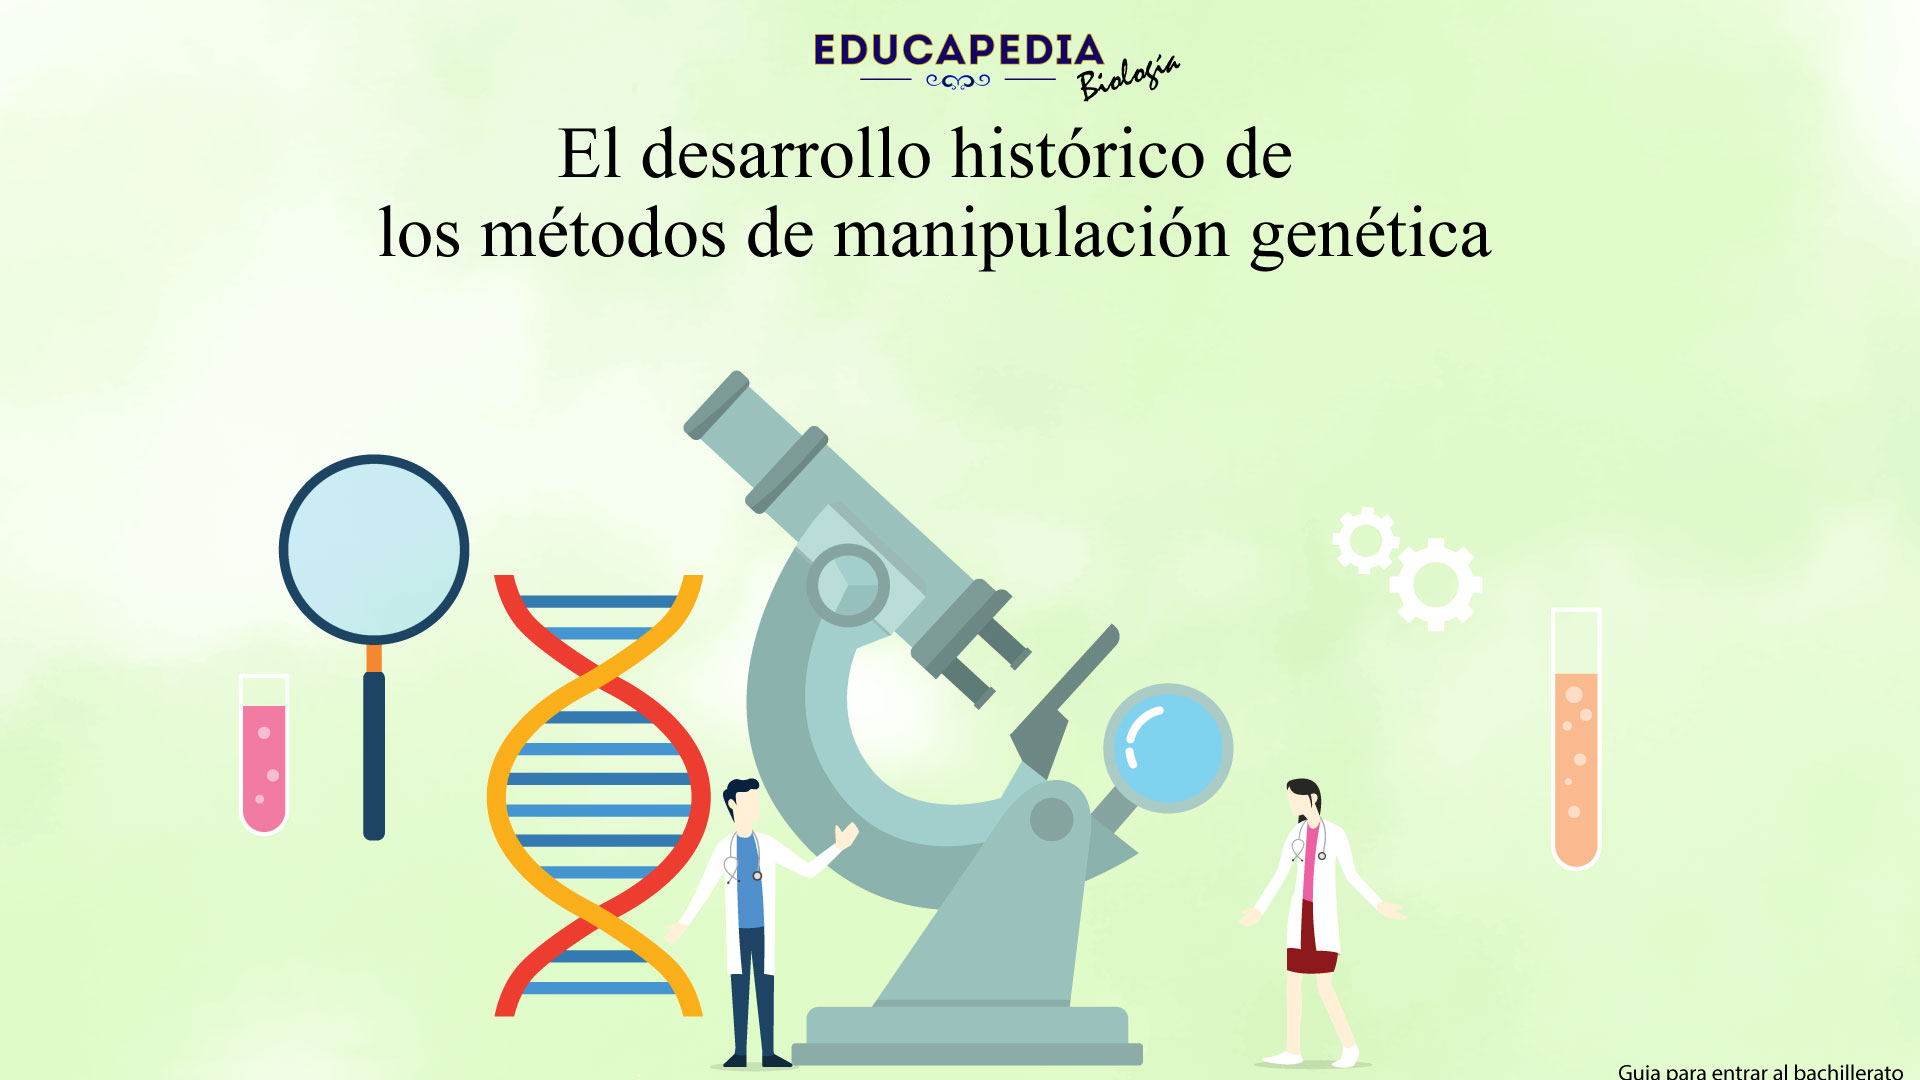 El desarrollo histórico de los métodos de manipulación genética